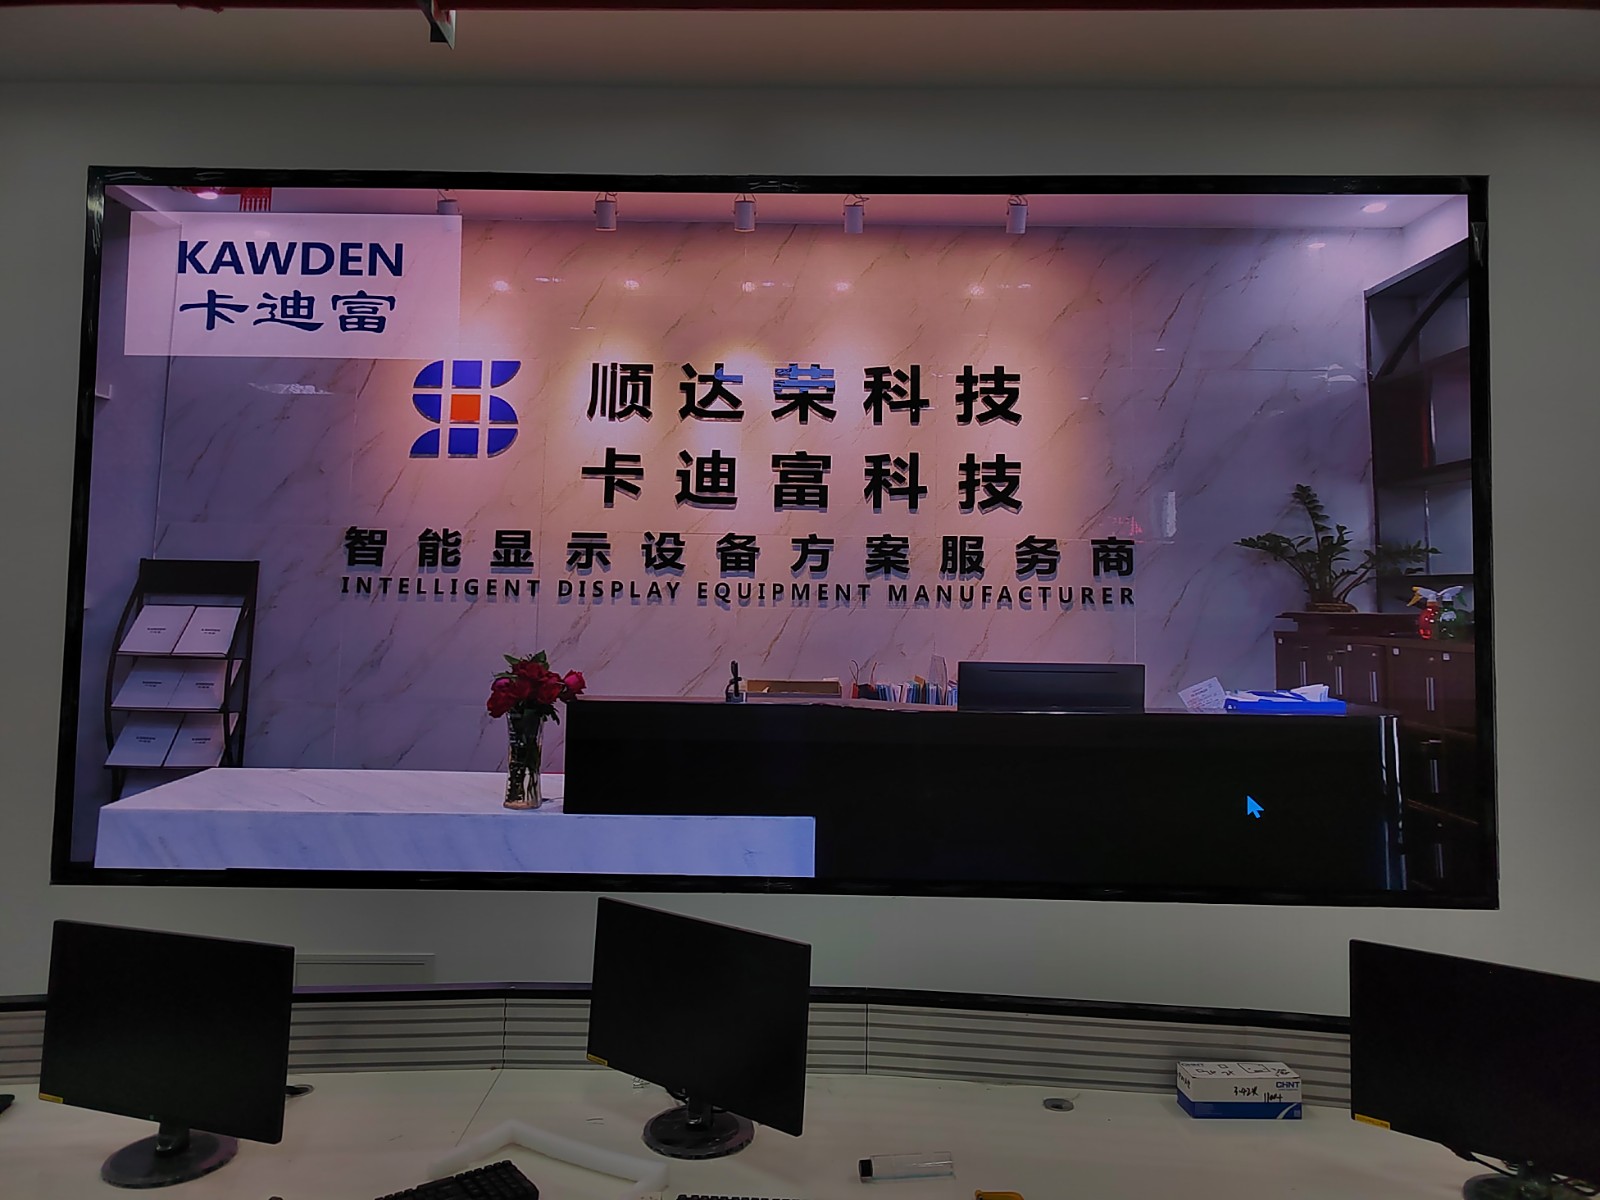 杭州市滨江区某机电职业技术学院P1.25LED显示屏案例图片